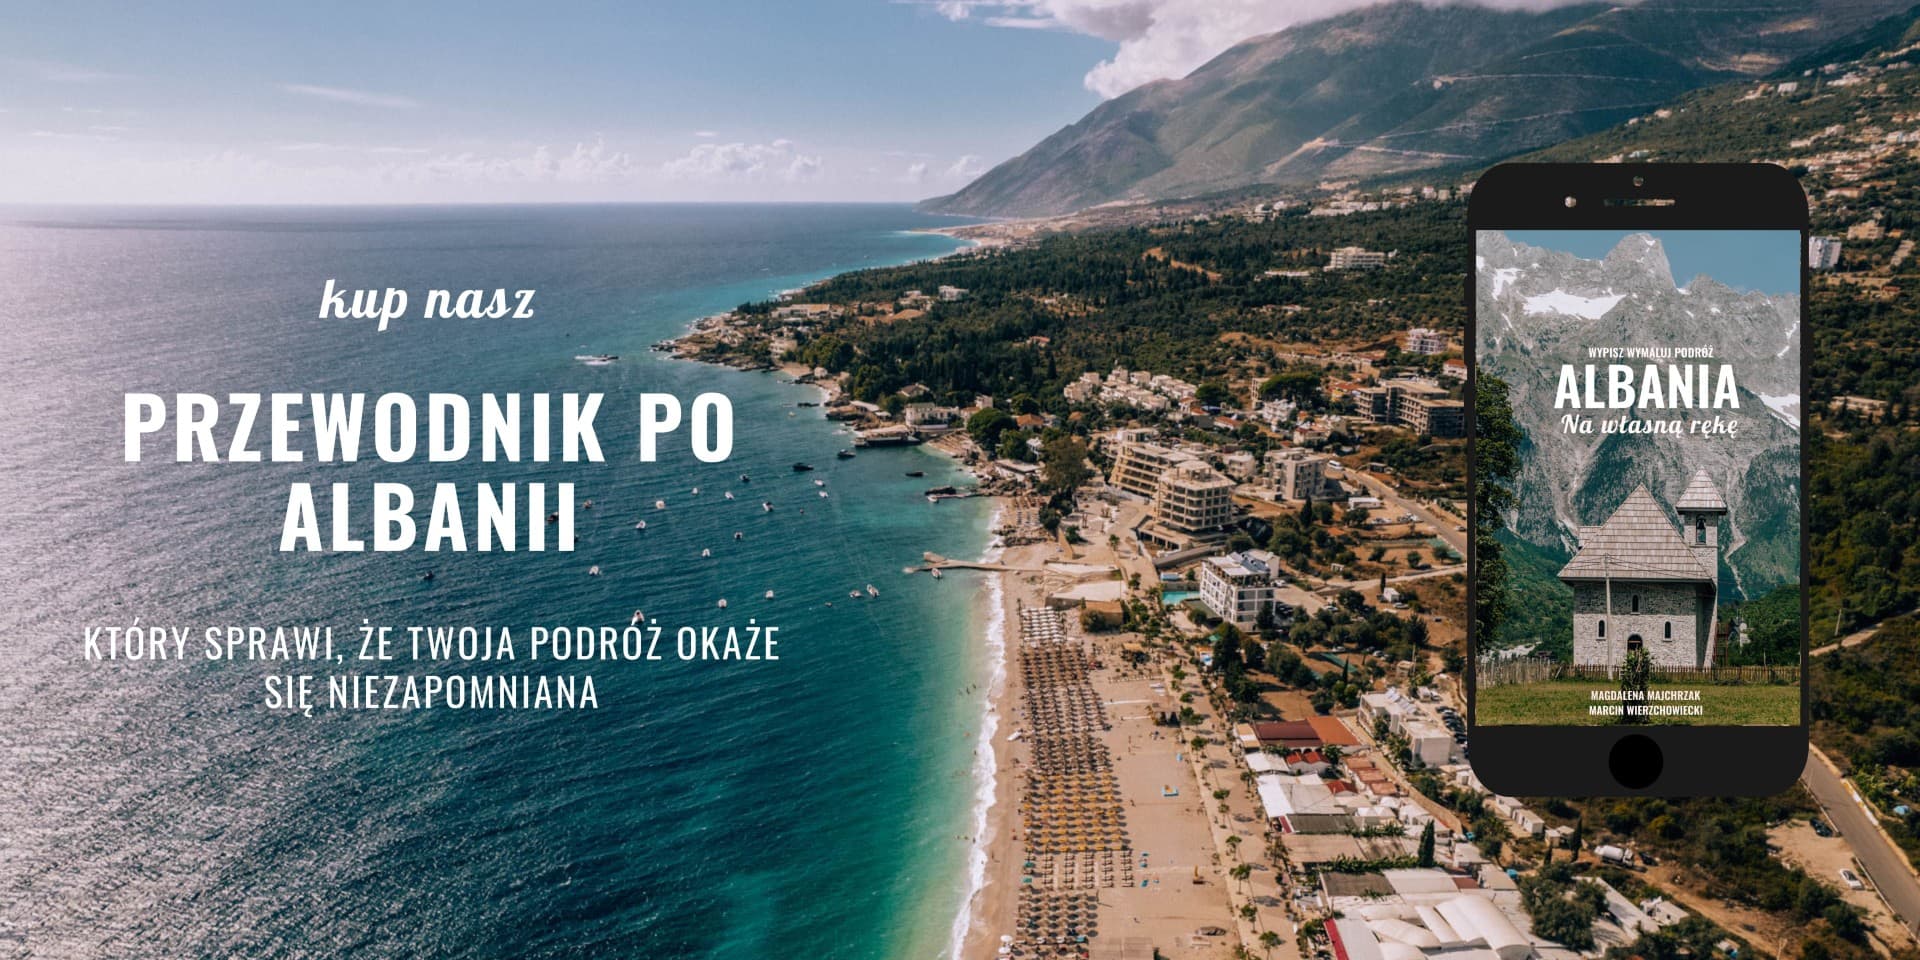 Albania ebook przewdonik